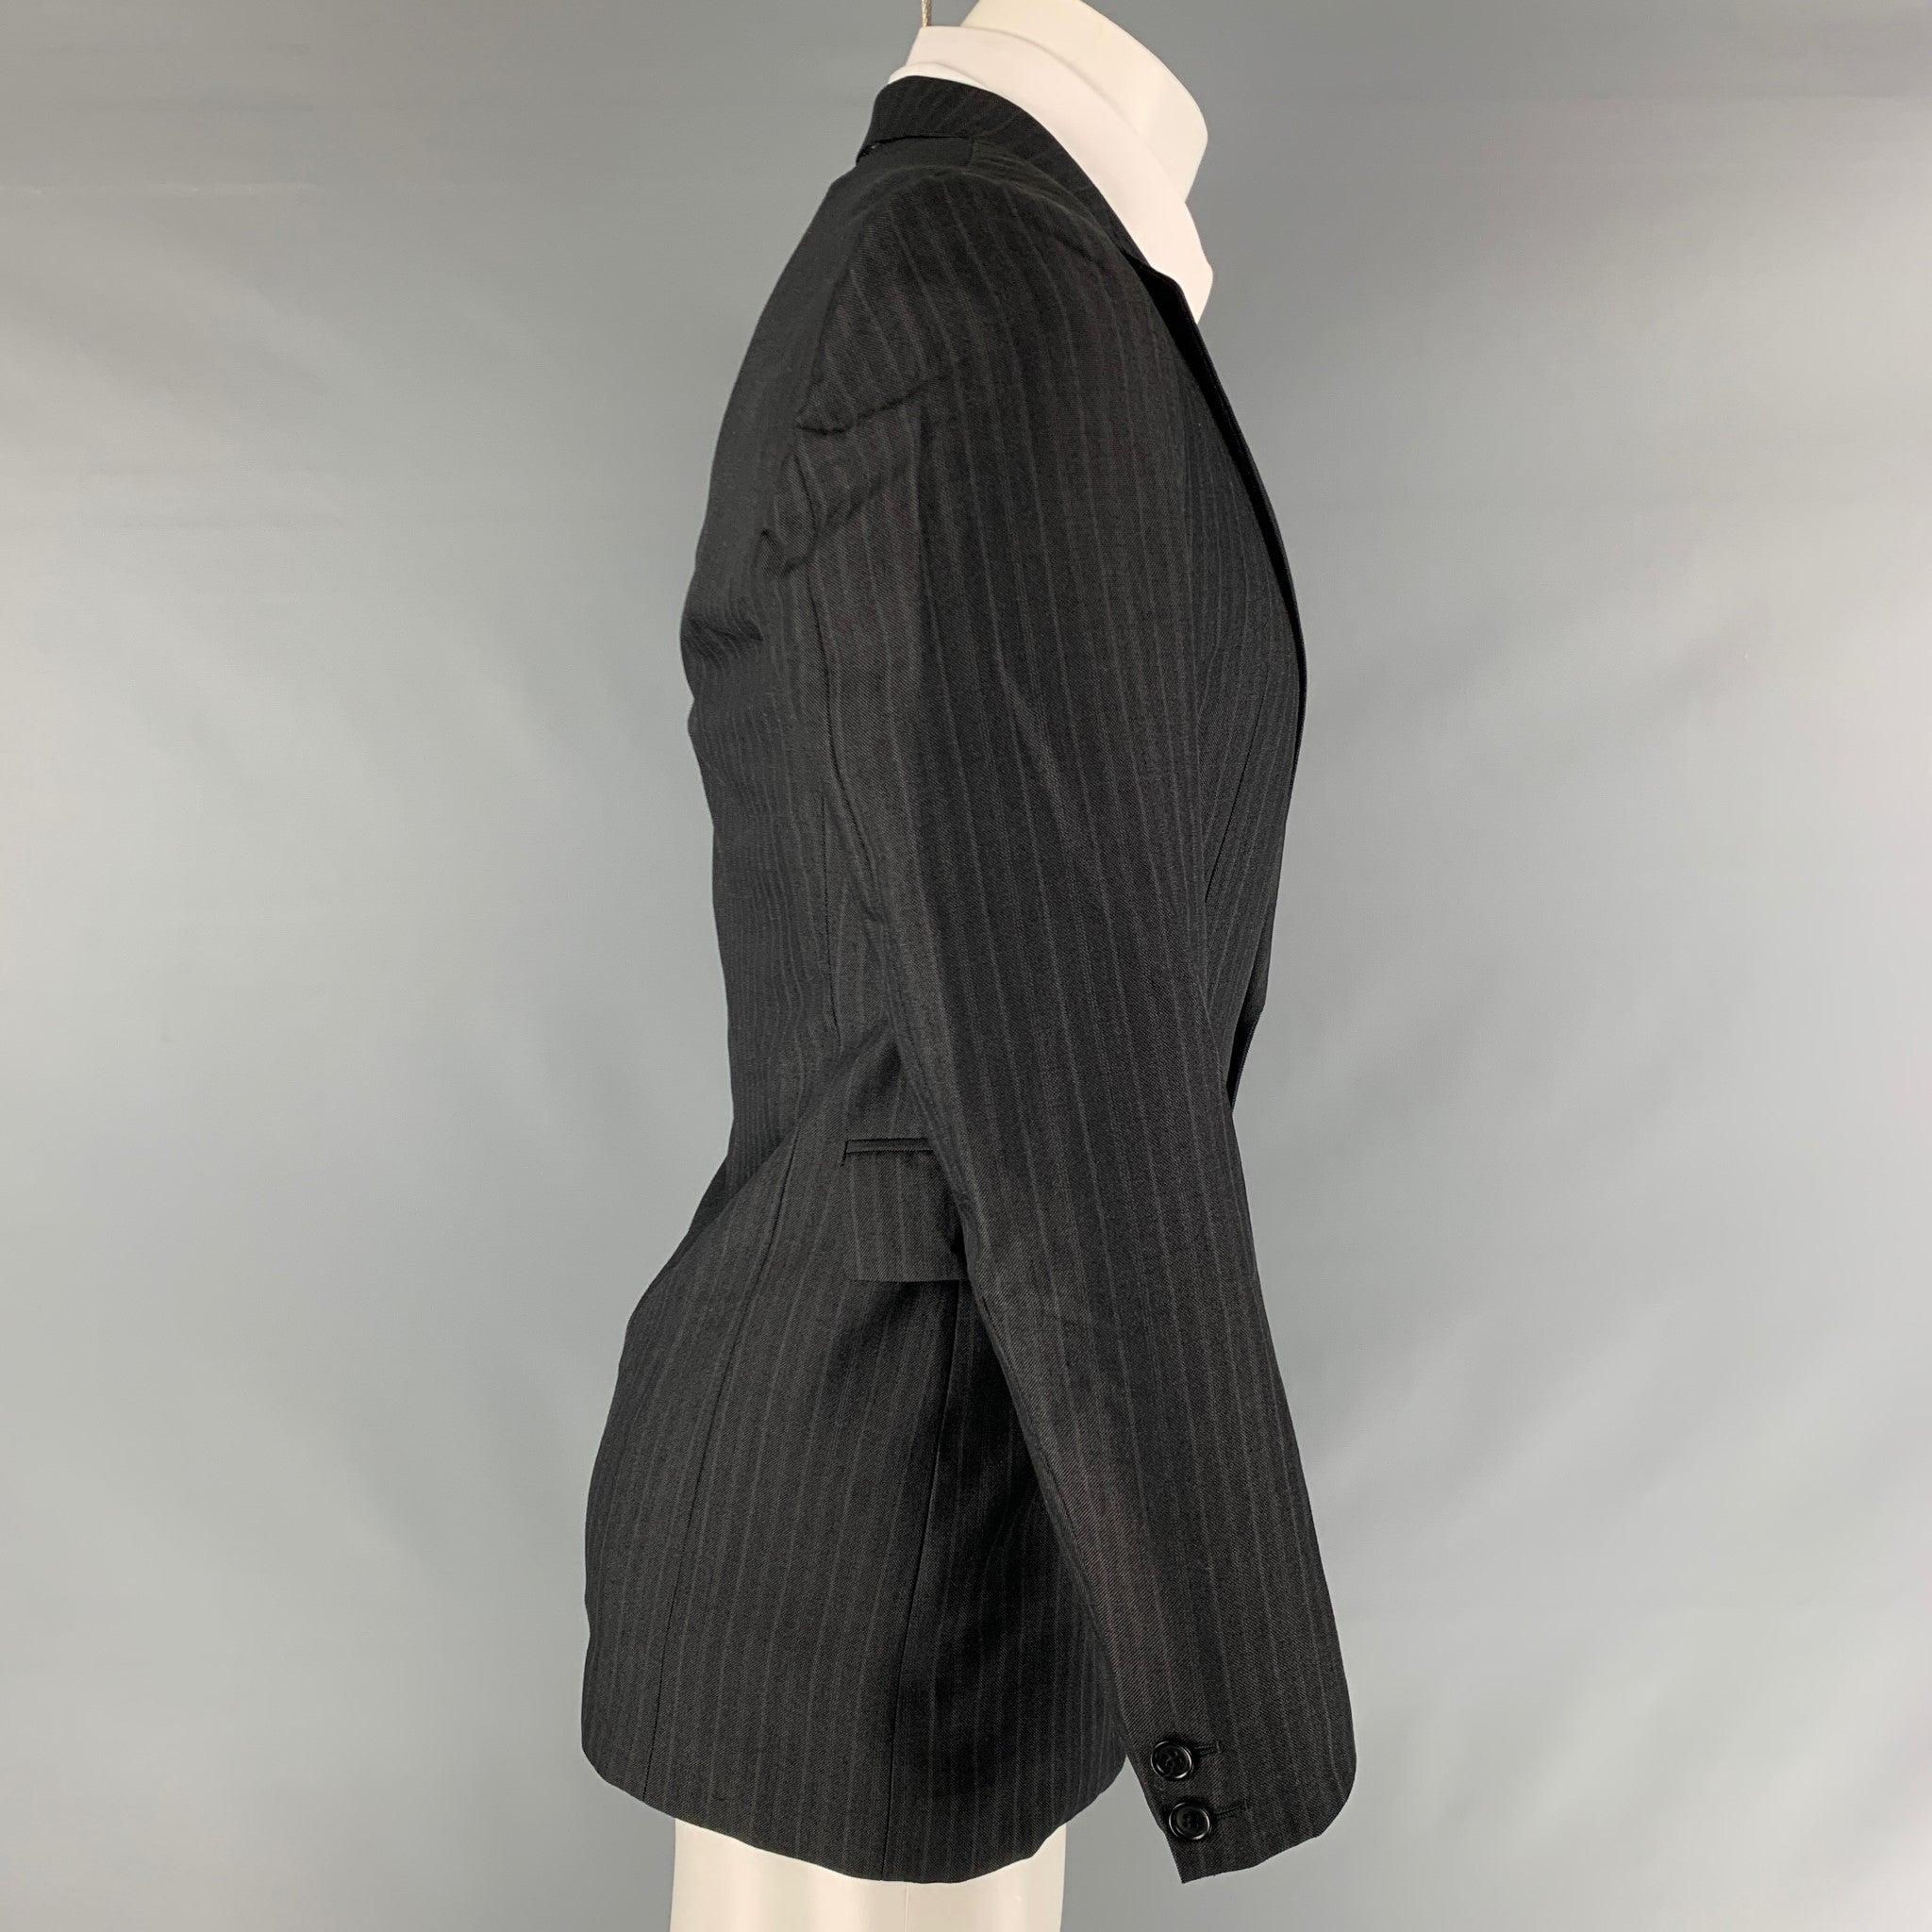 Le manteau de sport Coates NATIONAL se compose d'une étoffe tissée en laine mélangée rayée noire, d'un revers à cran, de poches à rabat et d'une fermeture à double bouton. Fabriqué en Italie. Excellent état d'usage. 

Marqué :   38 

Mesures : 
